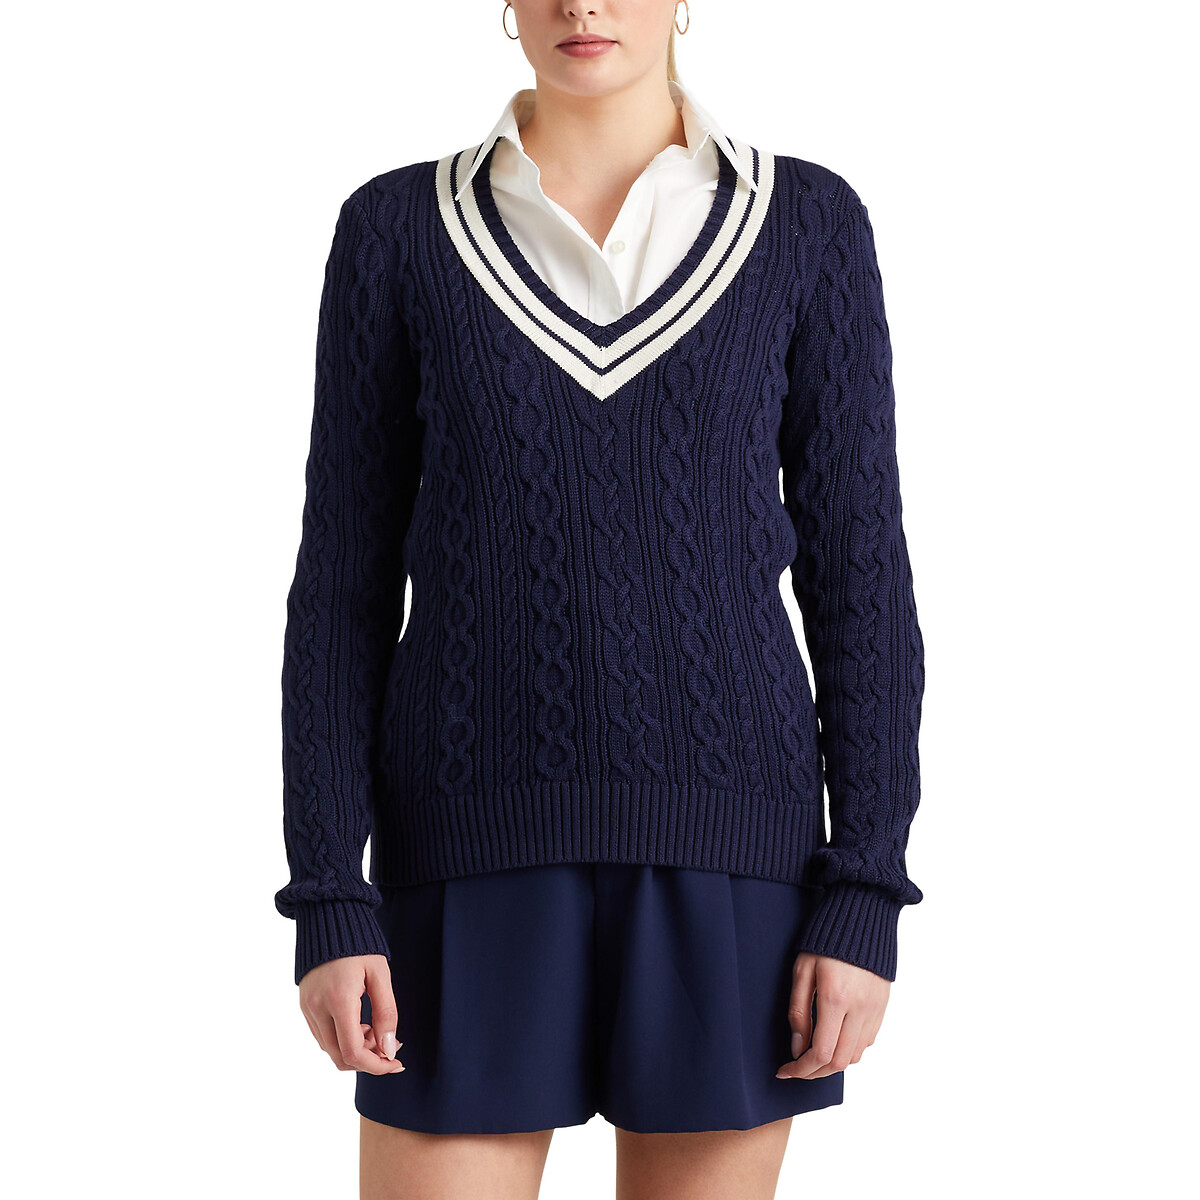 Пуловер с витым узором M синий пуловер с v образным вырезом и витым узором xl синий